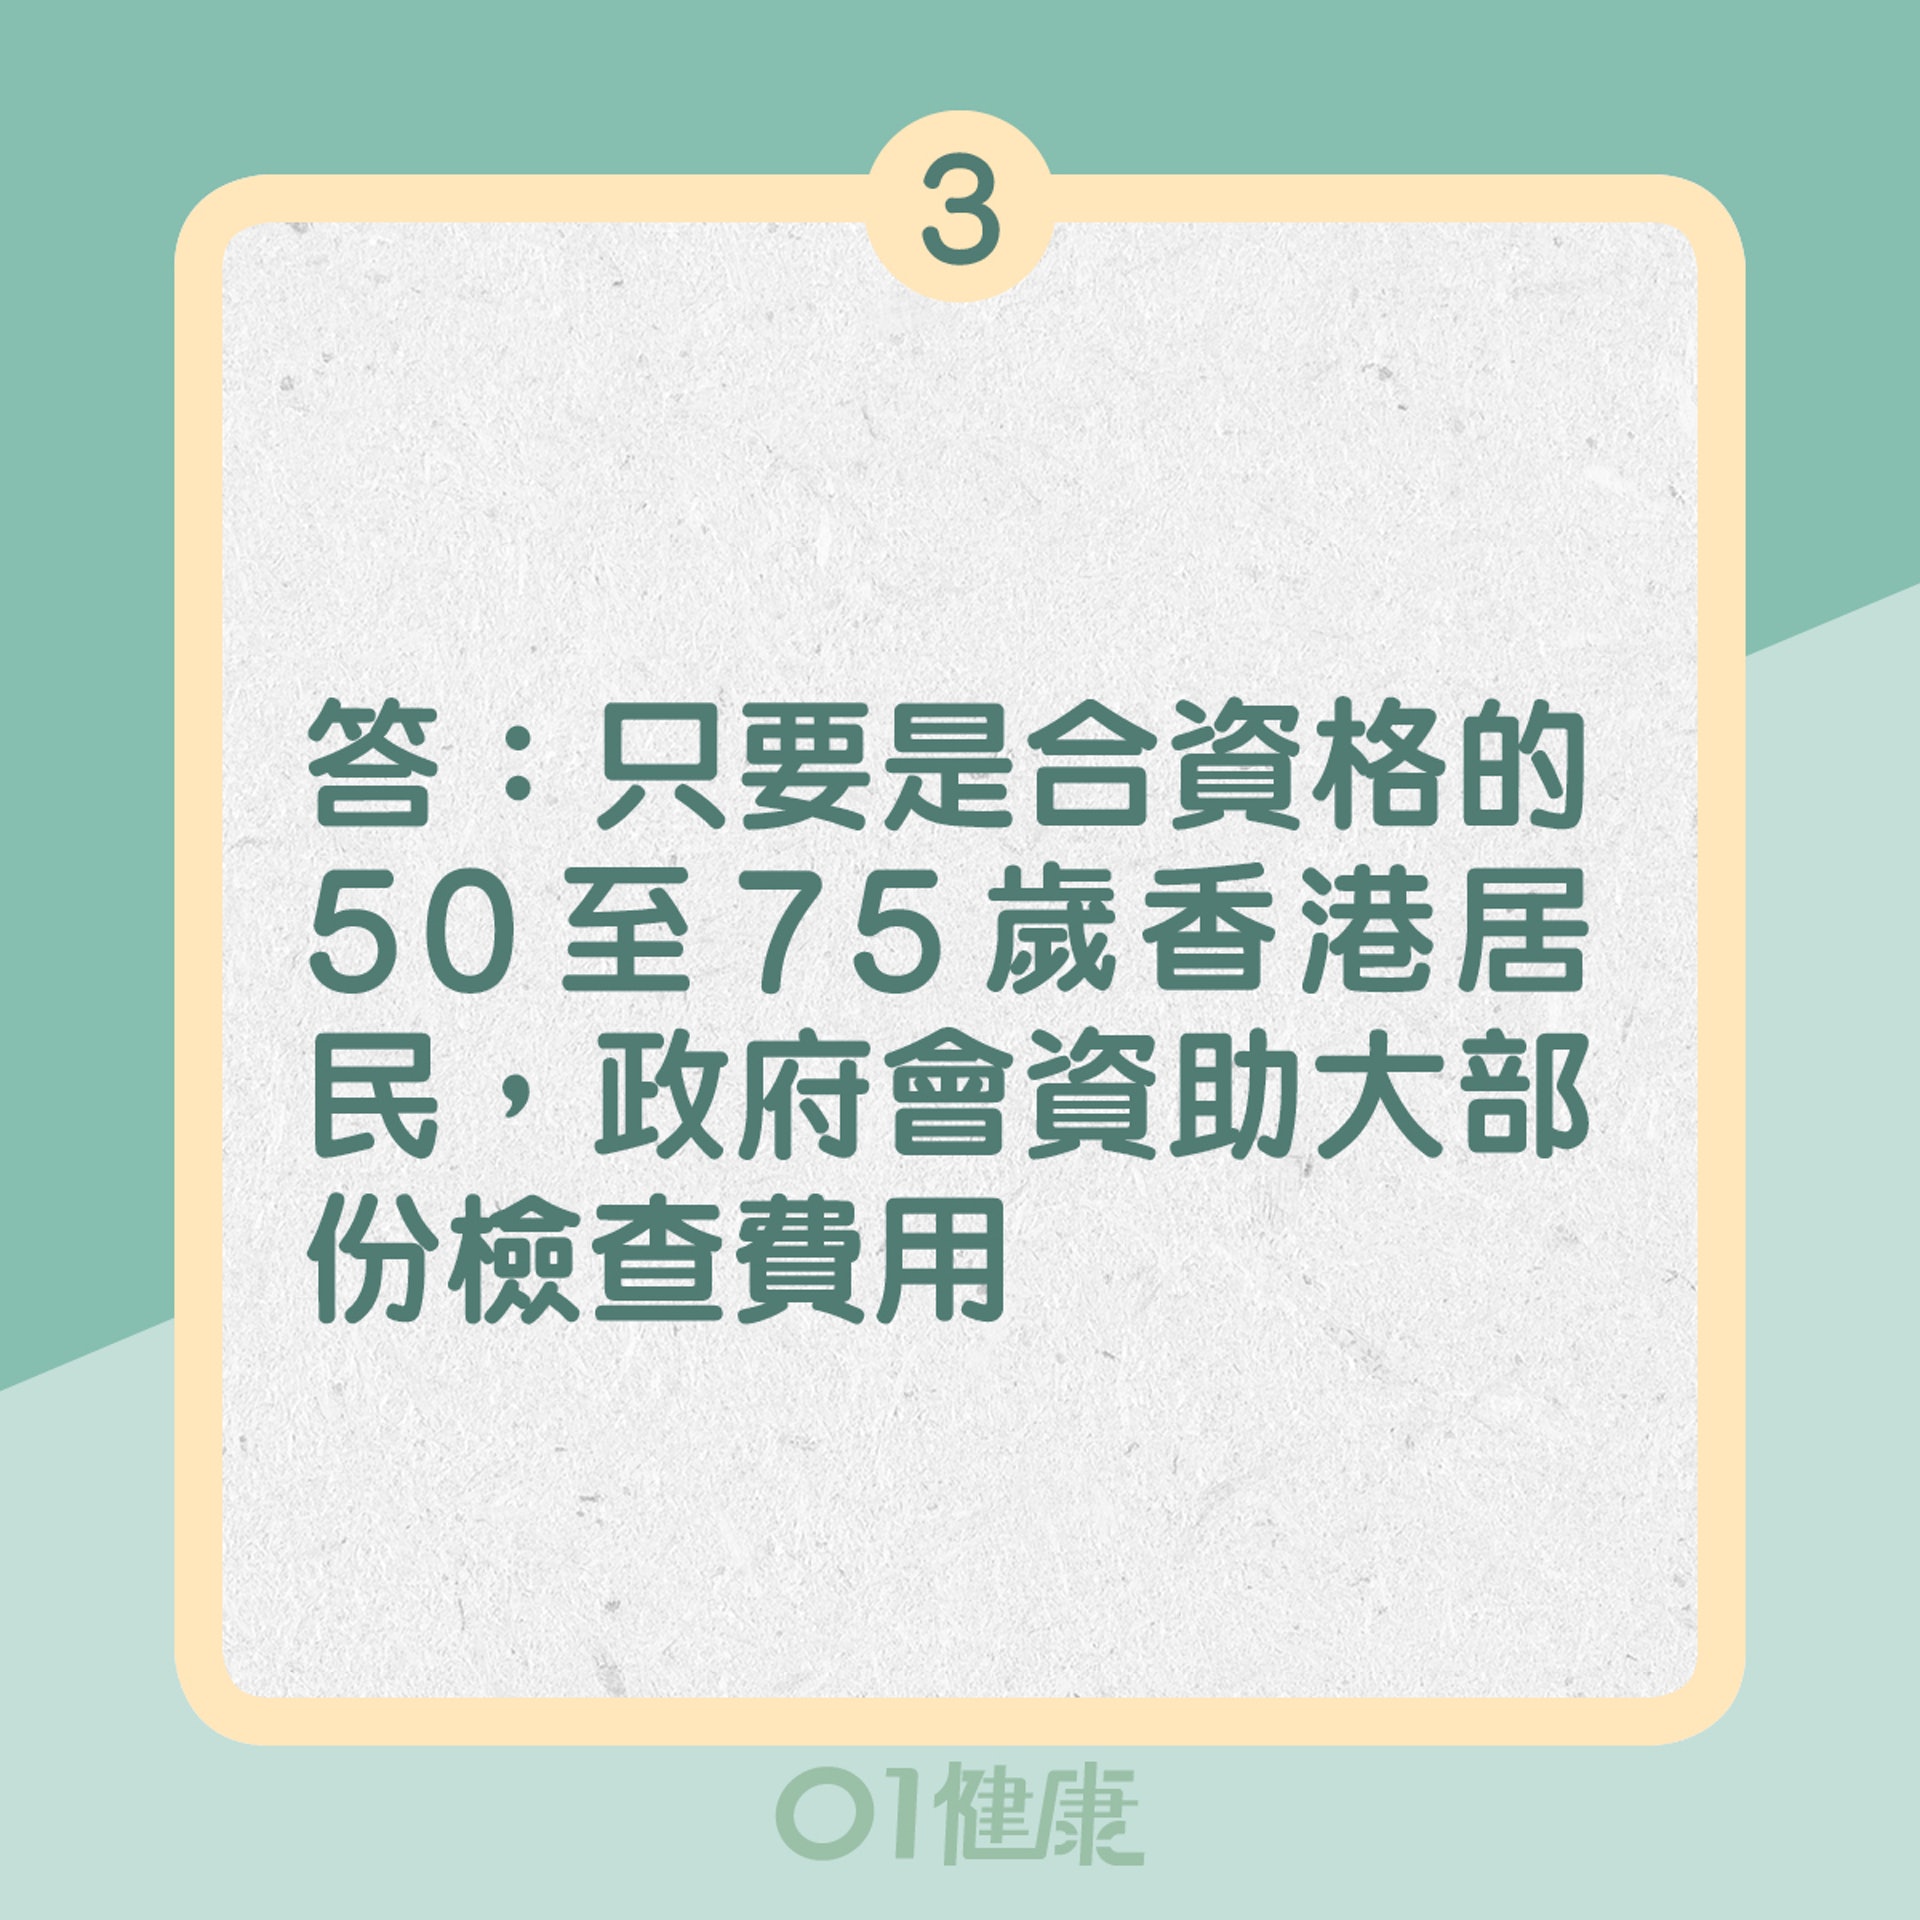 3. 答：只要是合資格的50至75歲香港居民，政府會資助大部分檢查費用（01製圖）